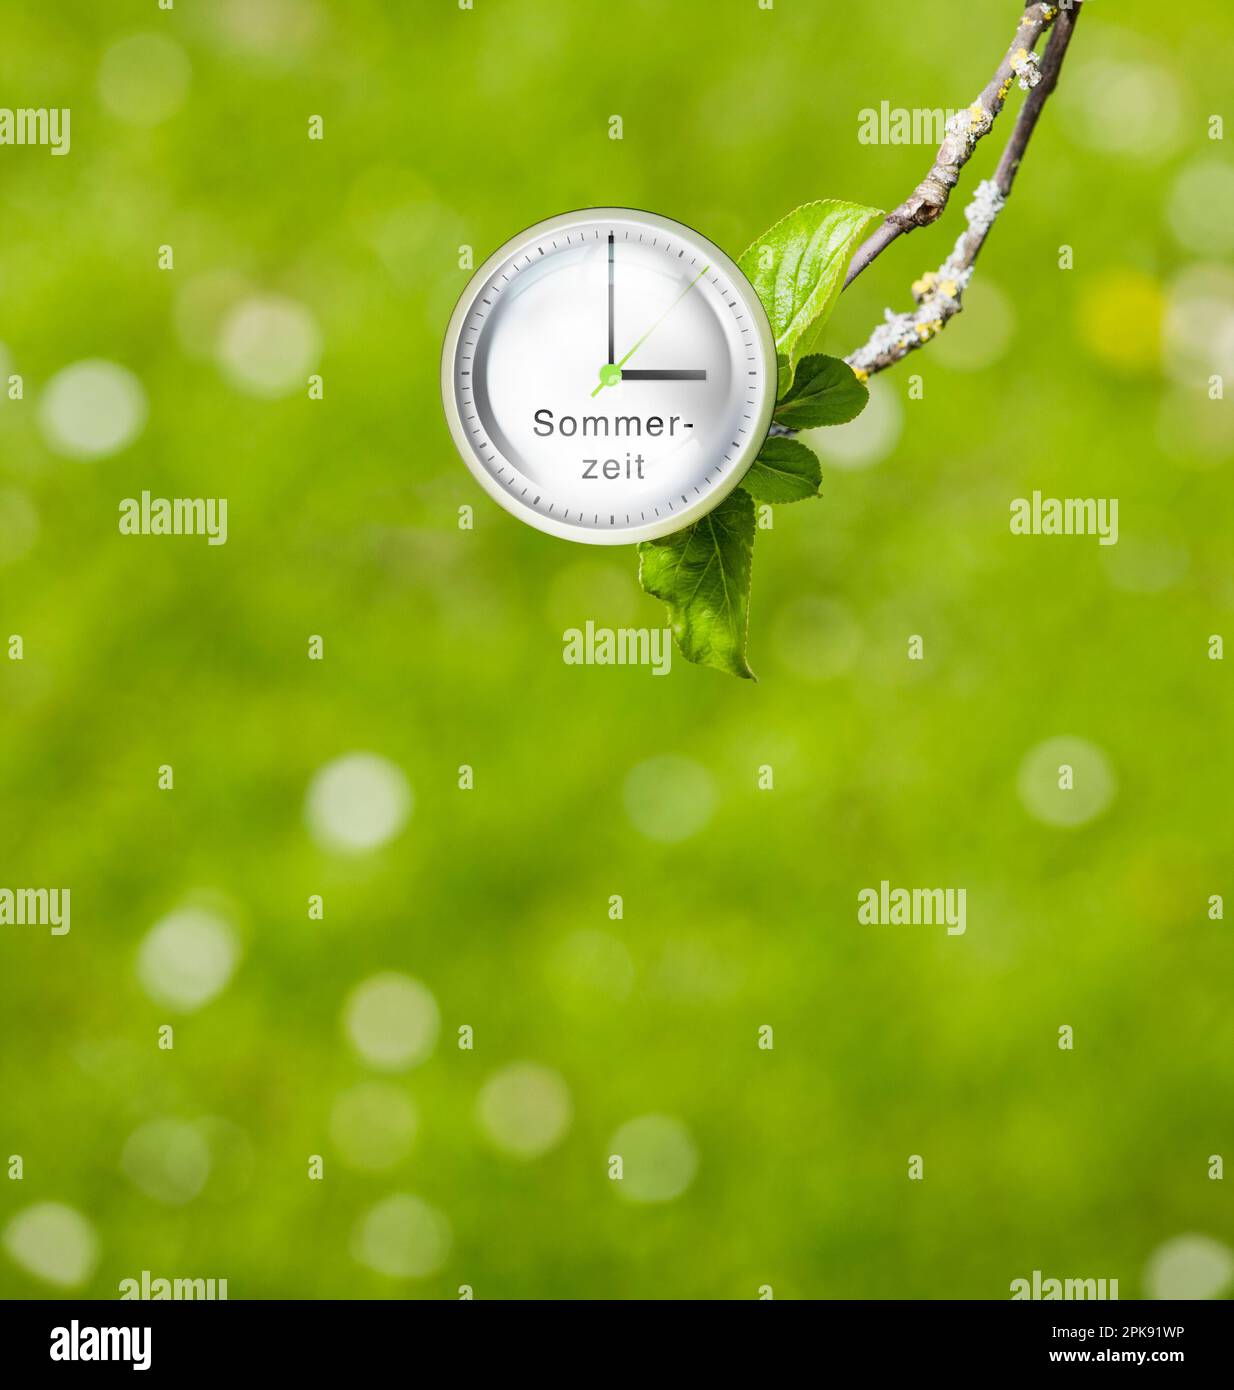 Horloge, le cadran indique trois heures, symbole de changement d'heure à l'heure d'été [M]. Banque D'Images